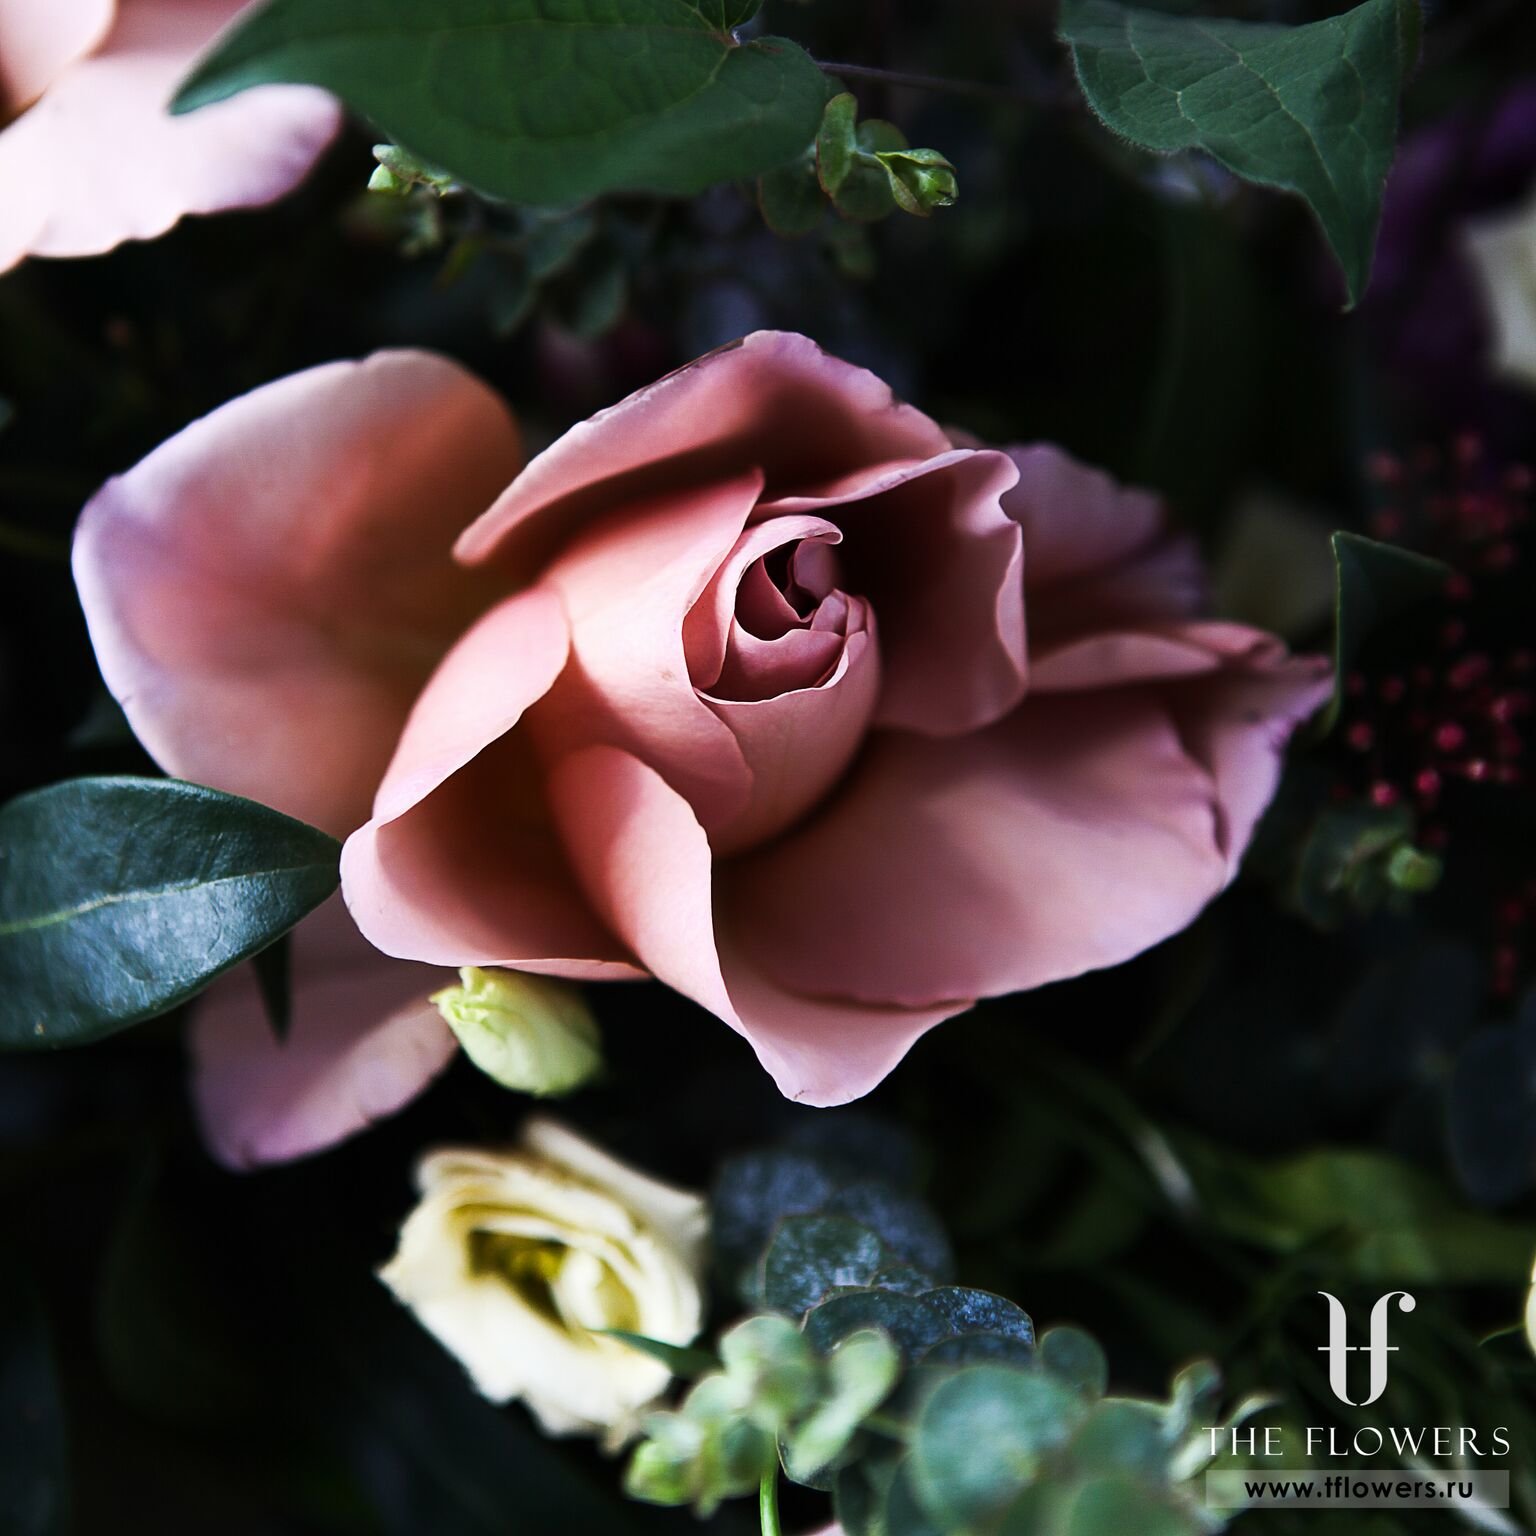 Роскошный букет с розами и орхидеями "ШАТО Де ФЛЕР"